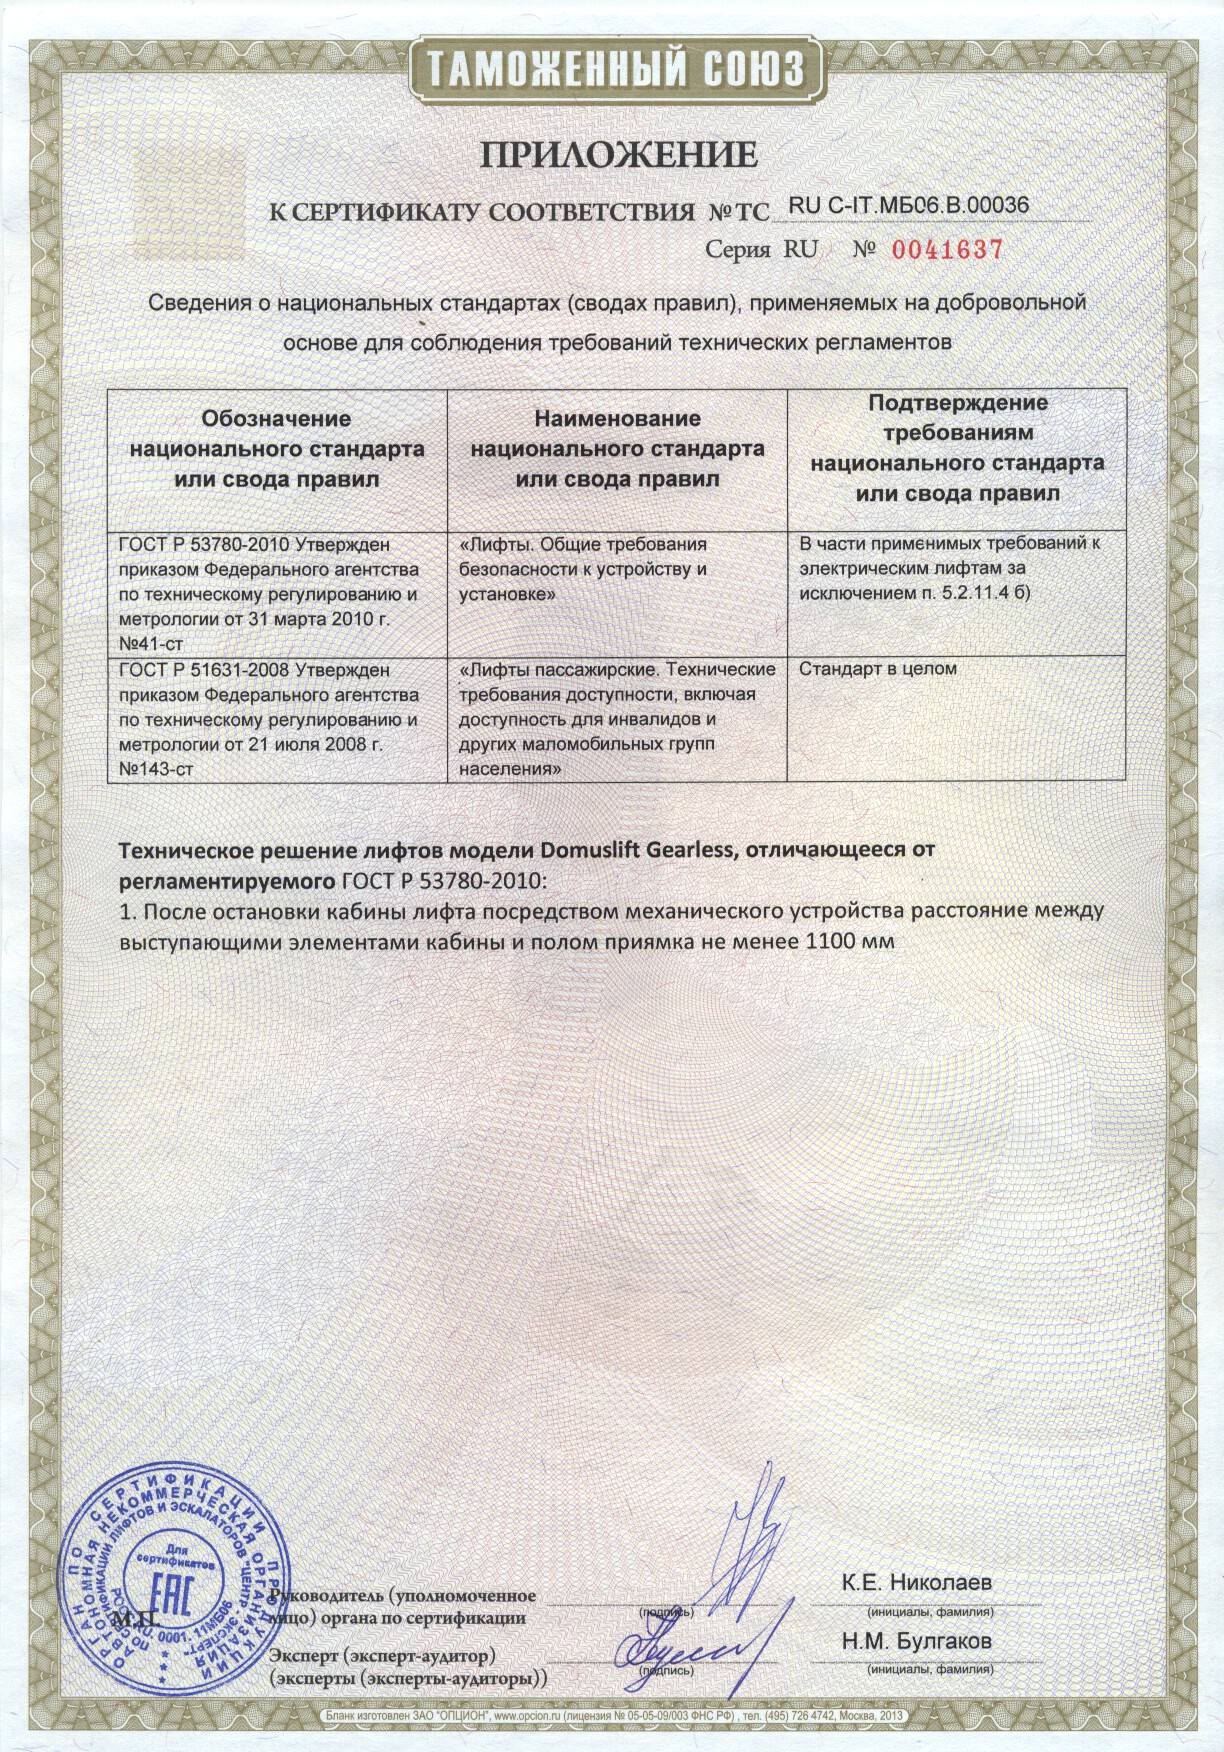 Приложение к сертификату № RU С-IT.МБ06.В00036